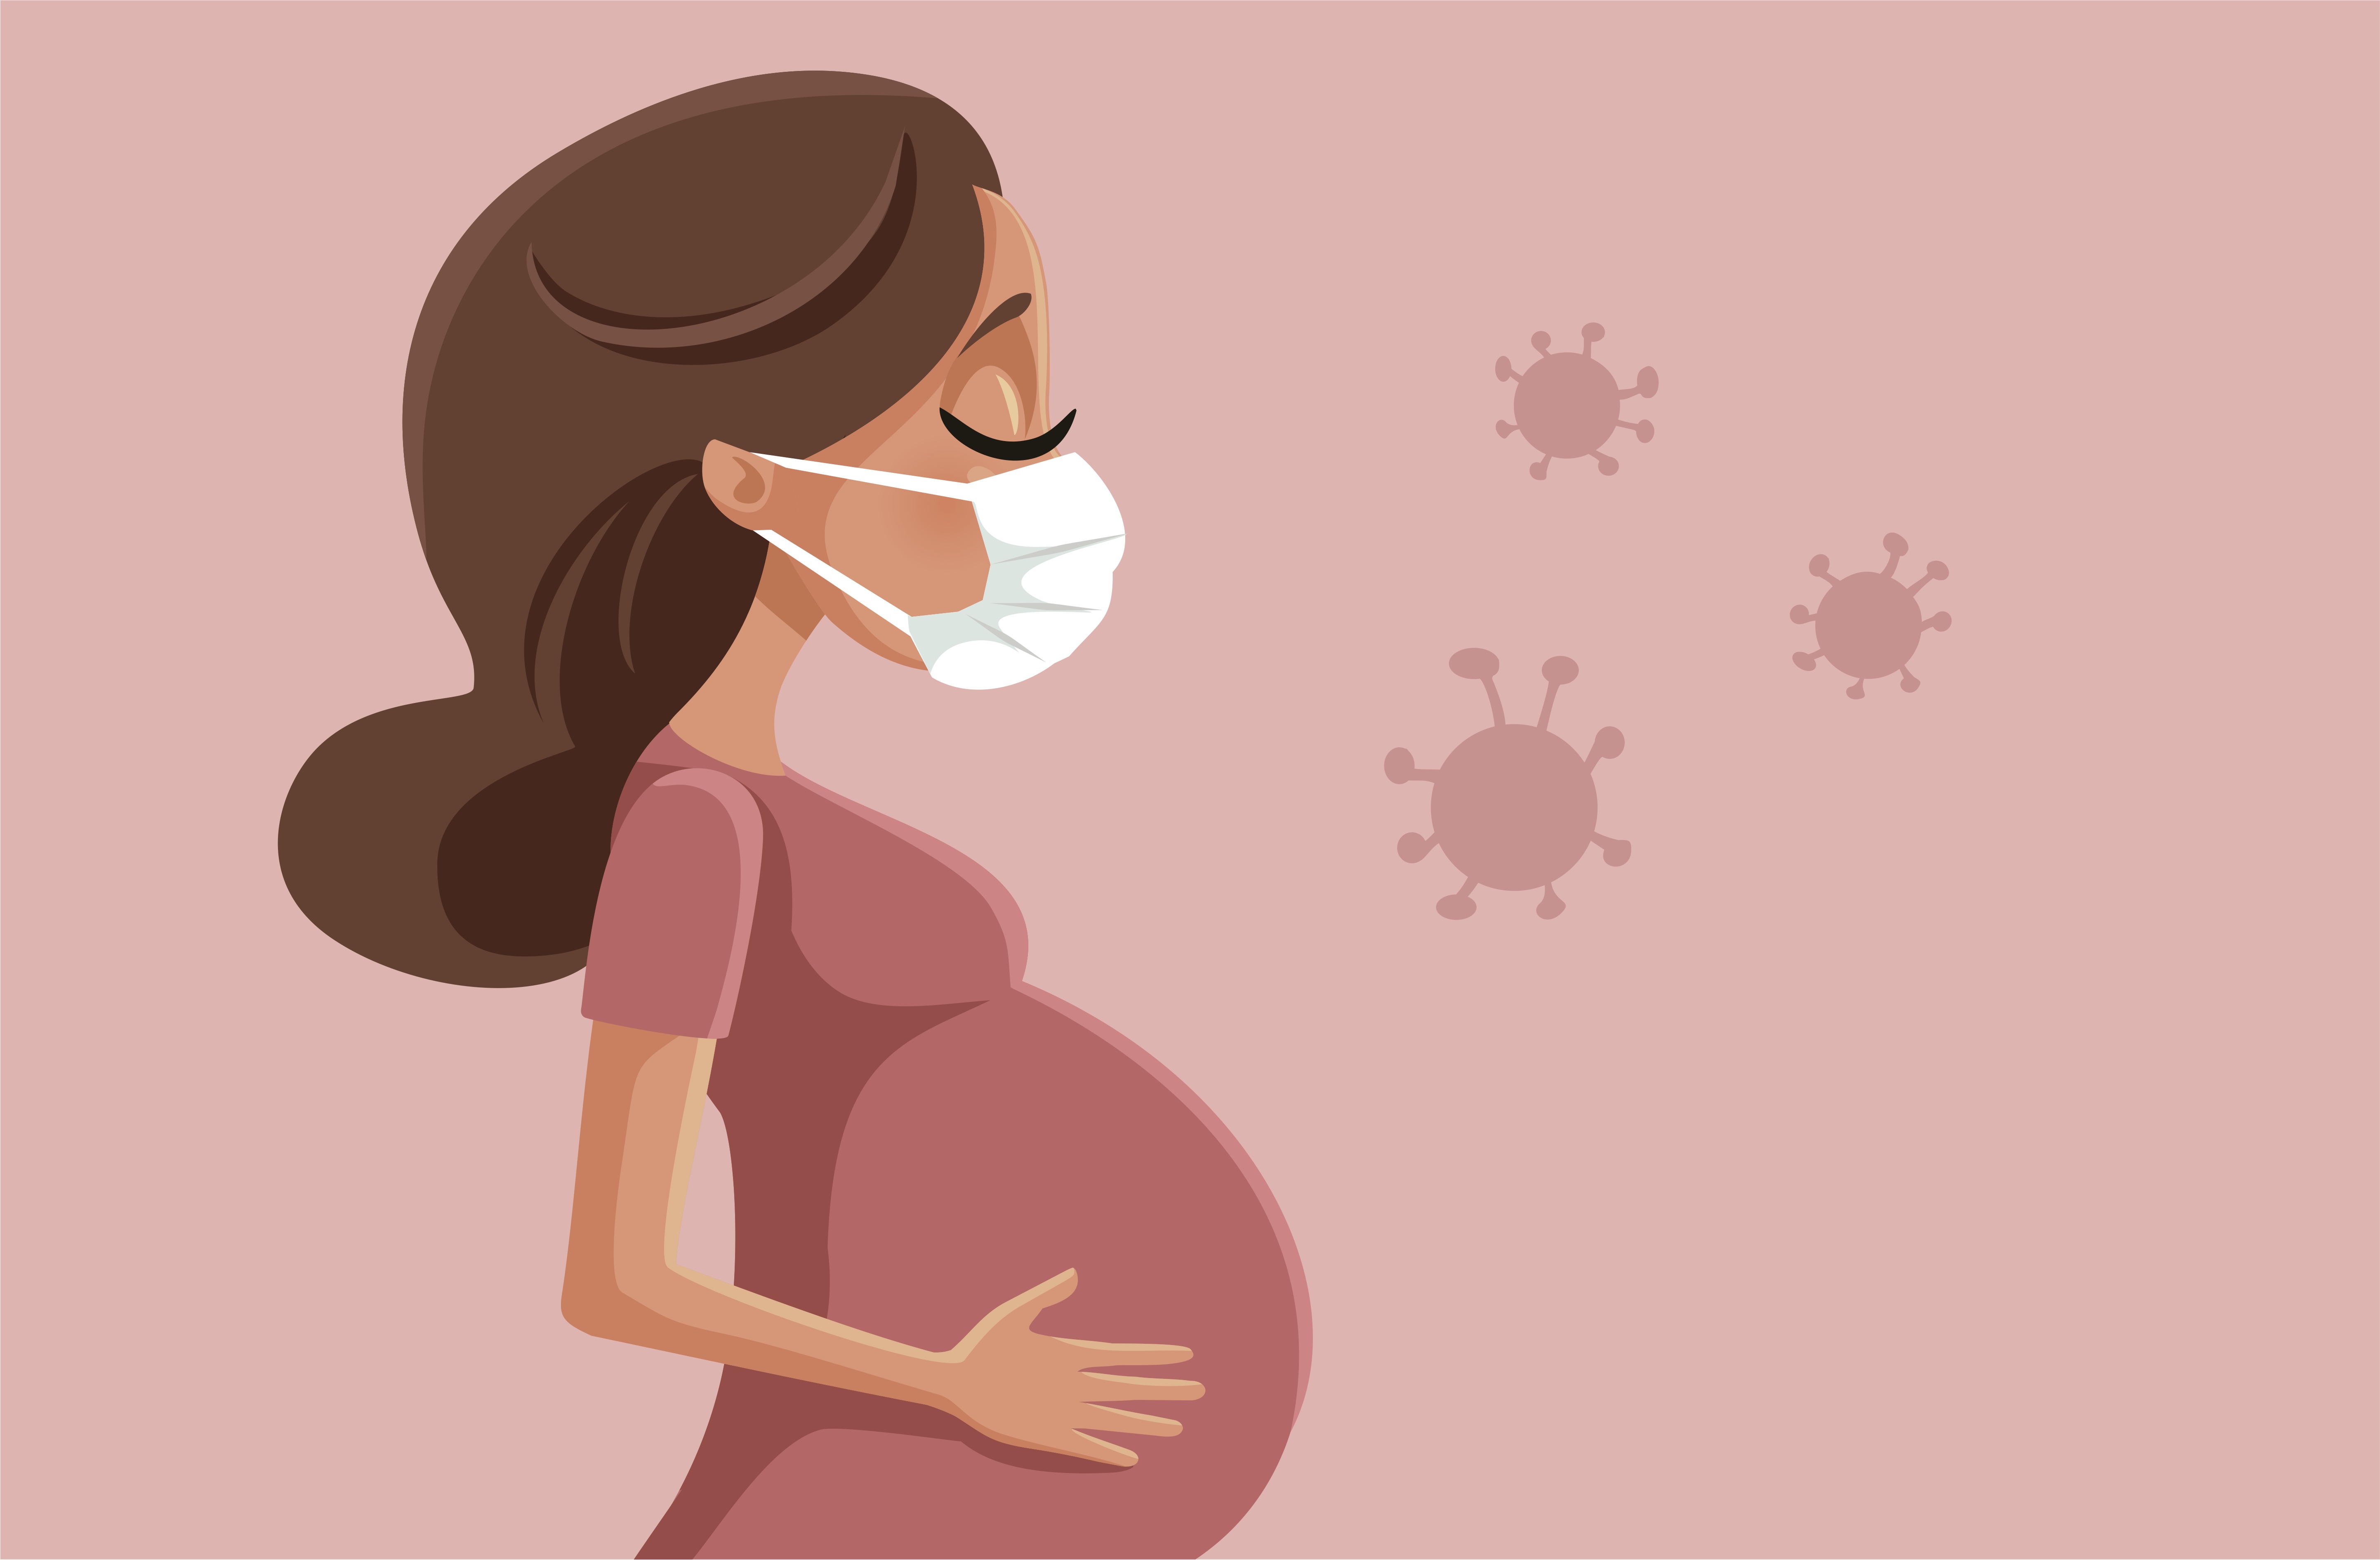 Волнения на форуме девятой недели беременности: Что ждет будущих мам